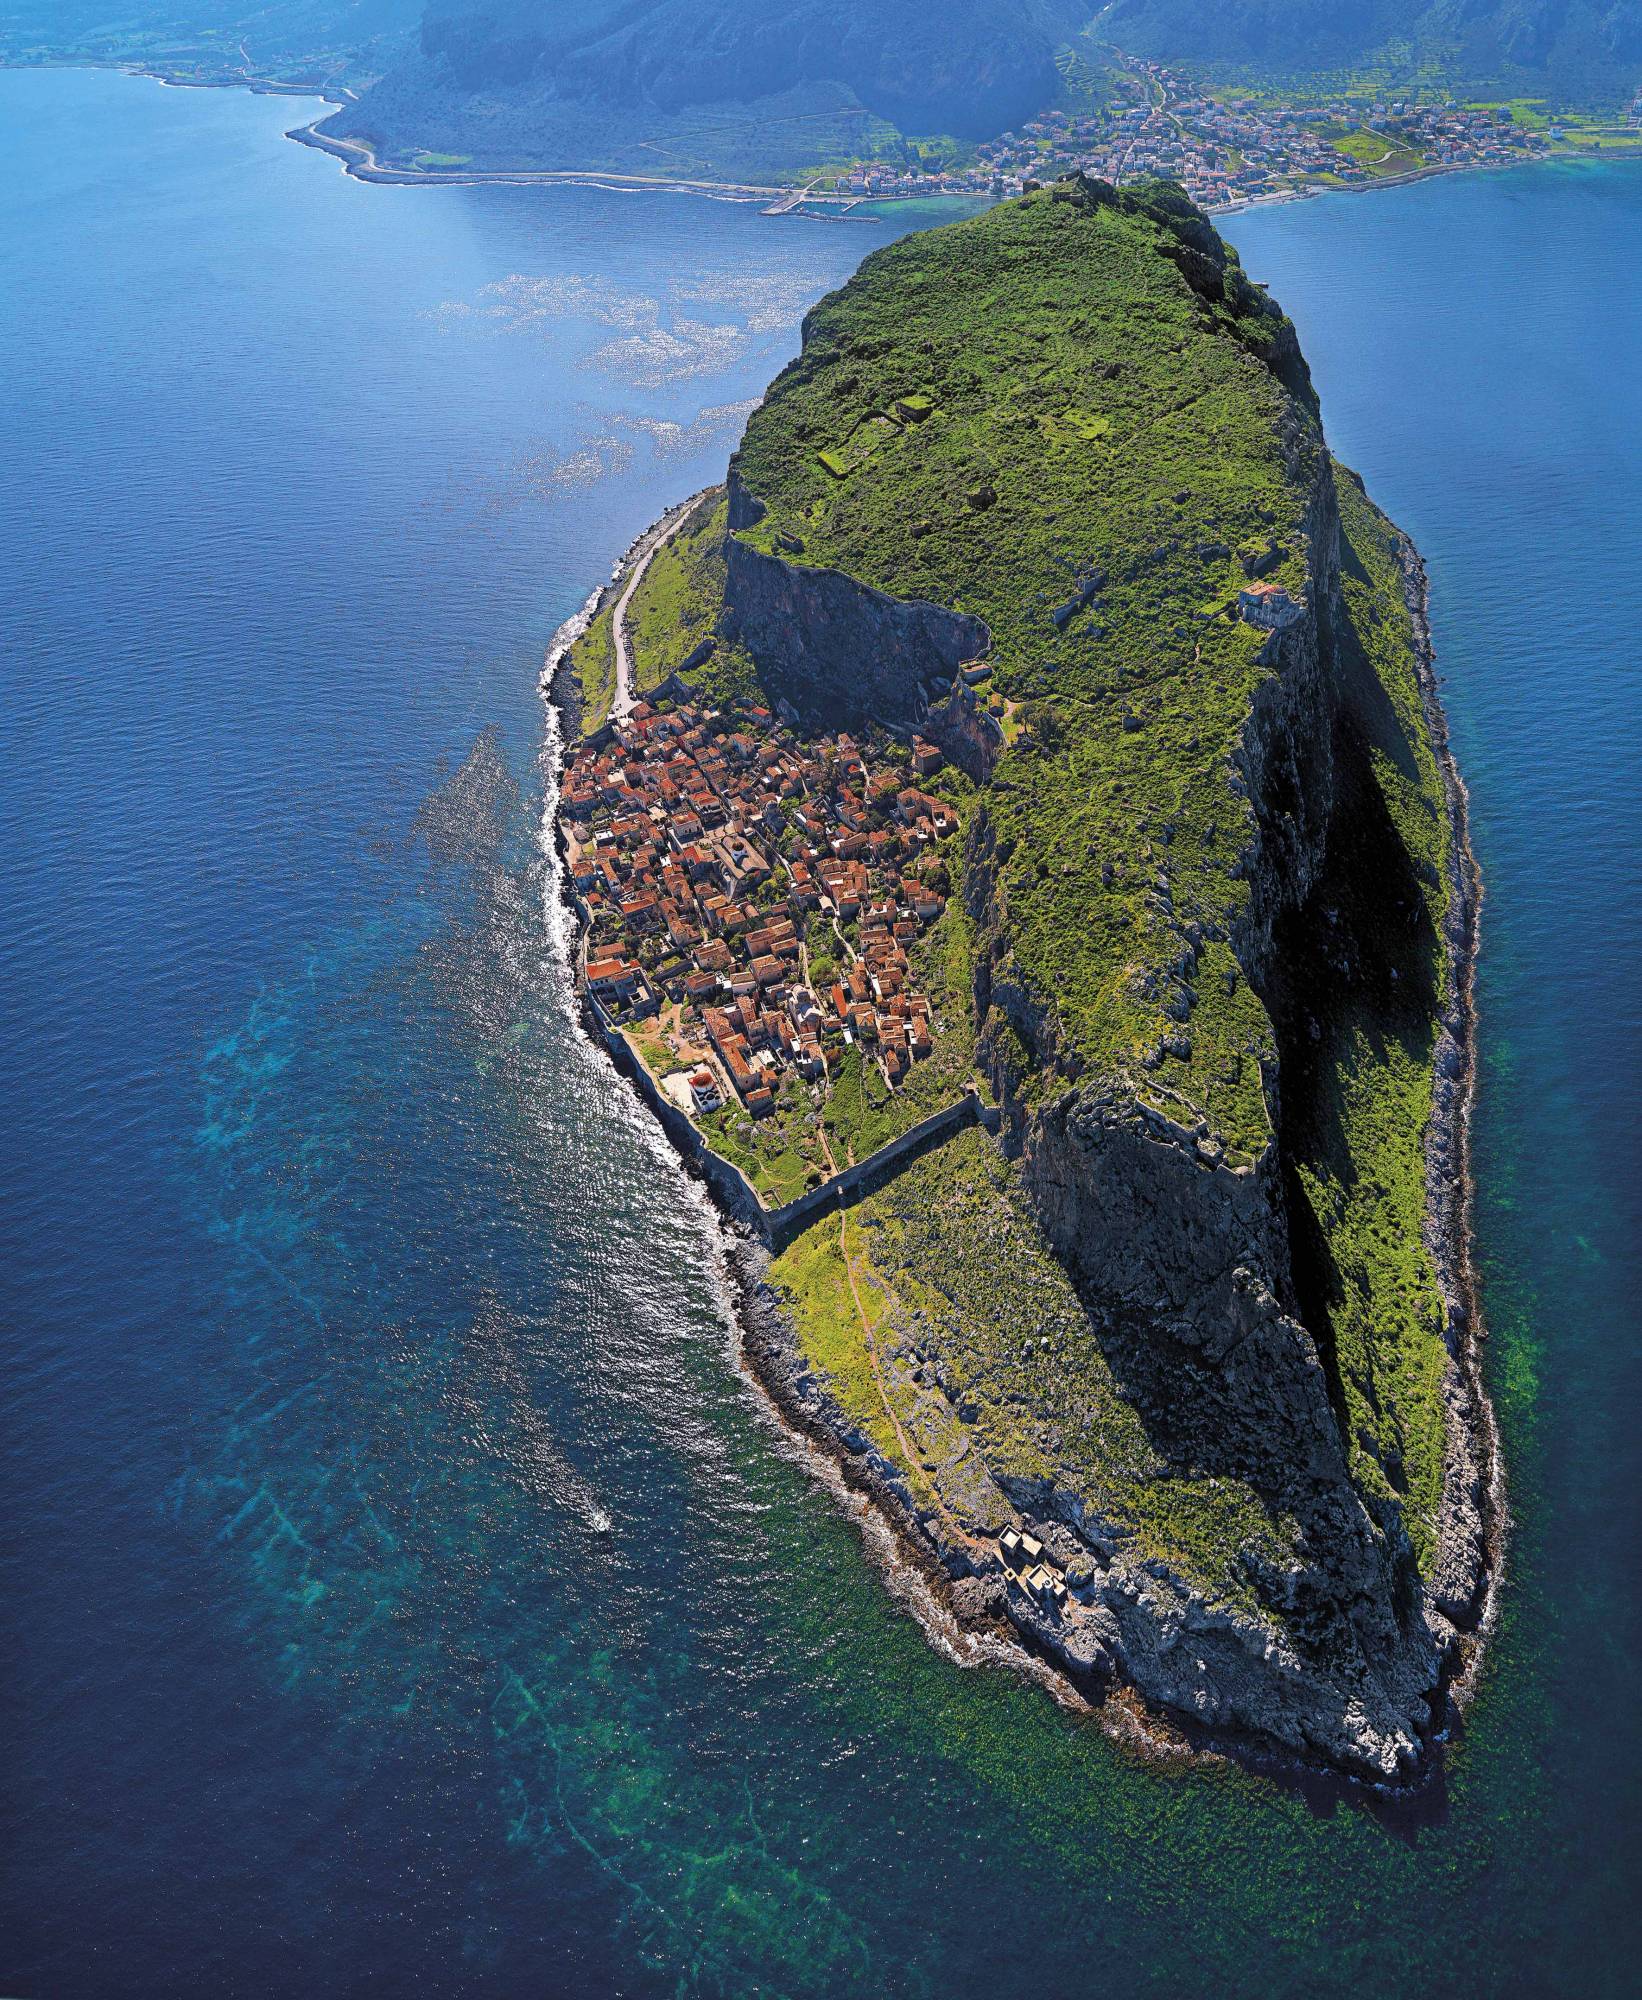 A fishing village in Greece